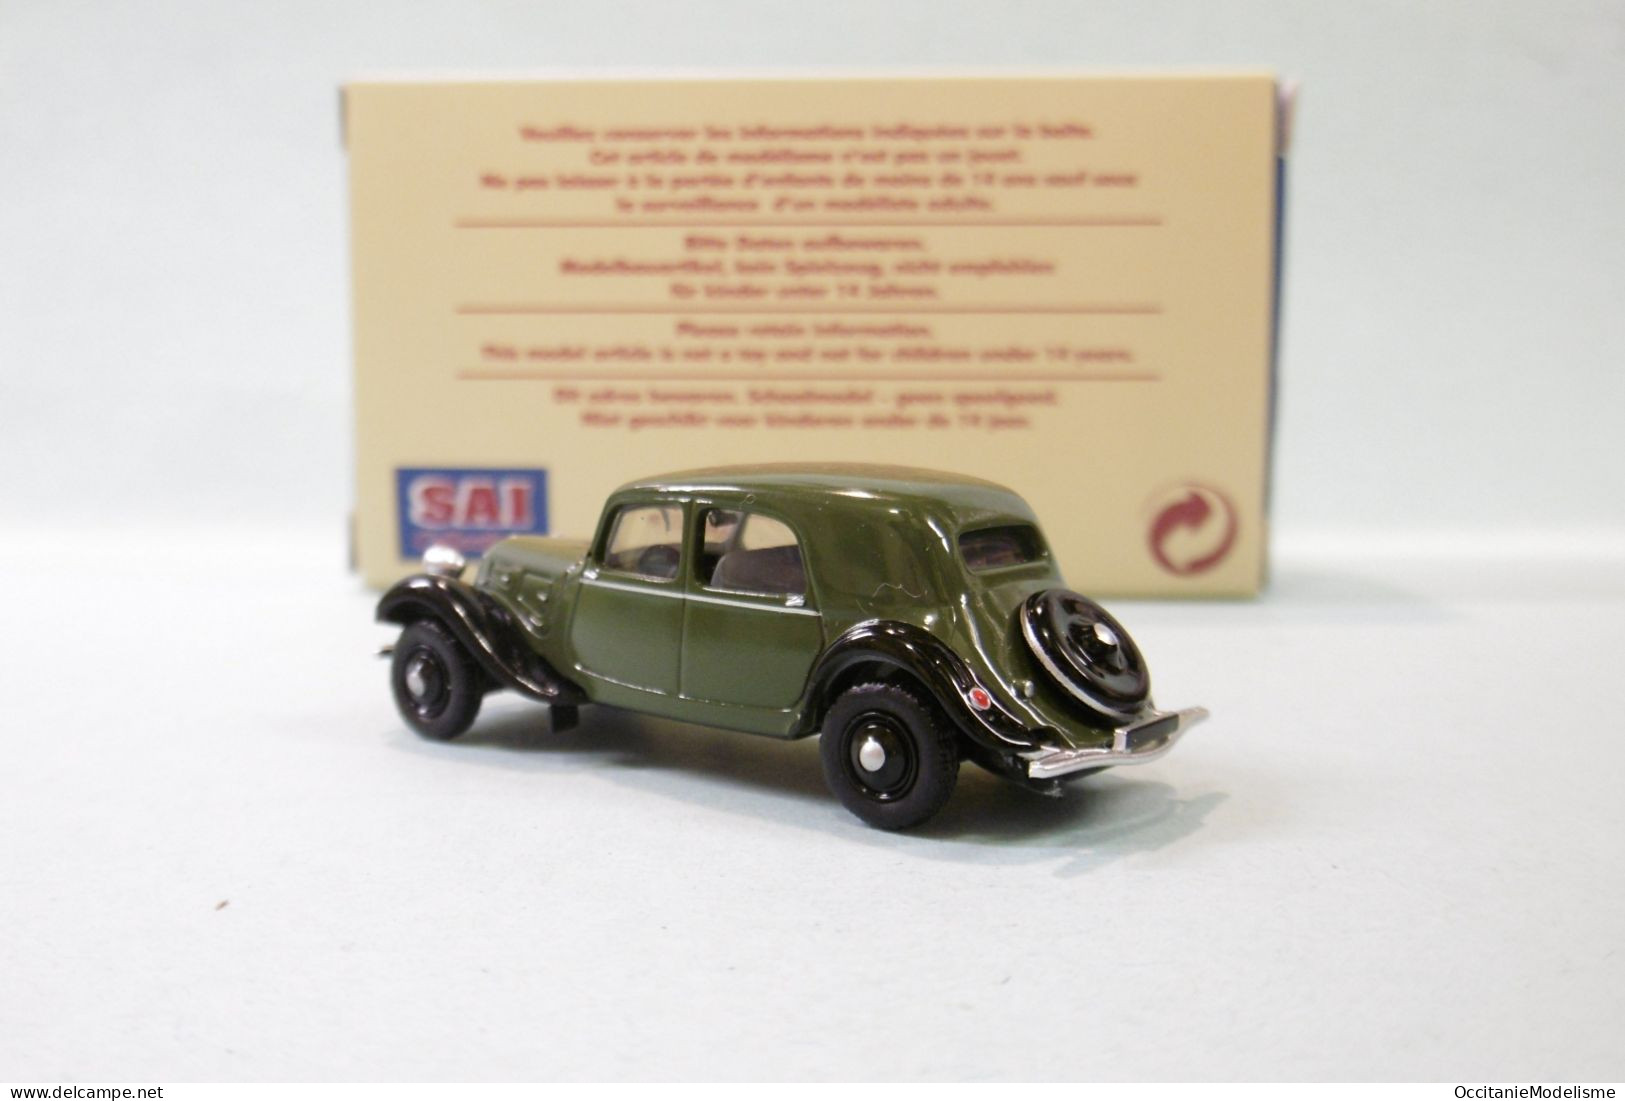 SAI Les Classiques - CITROEN TRACTION 11A Vert Olive Et Noir 1935 Réf. 6165 Neuf NBO HO 1/87 - Road Vehicles